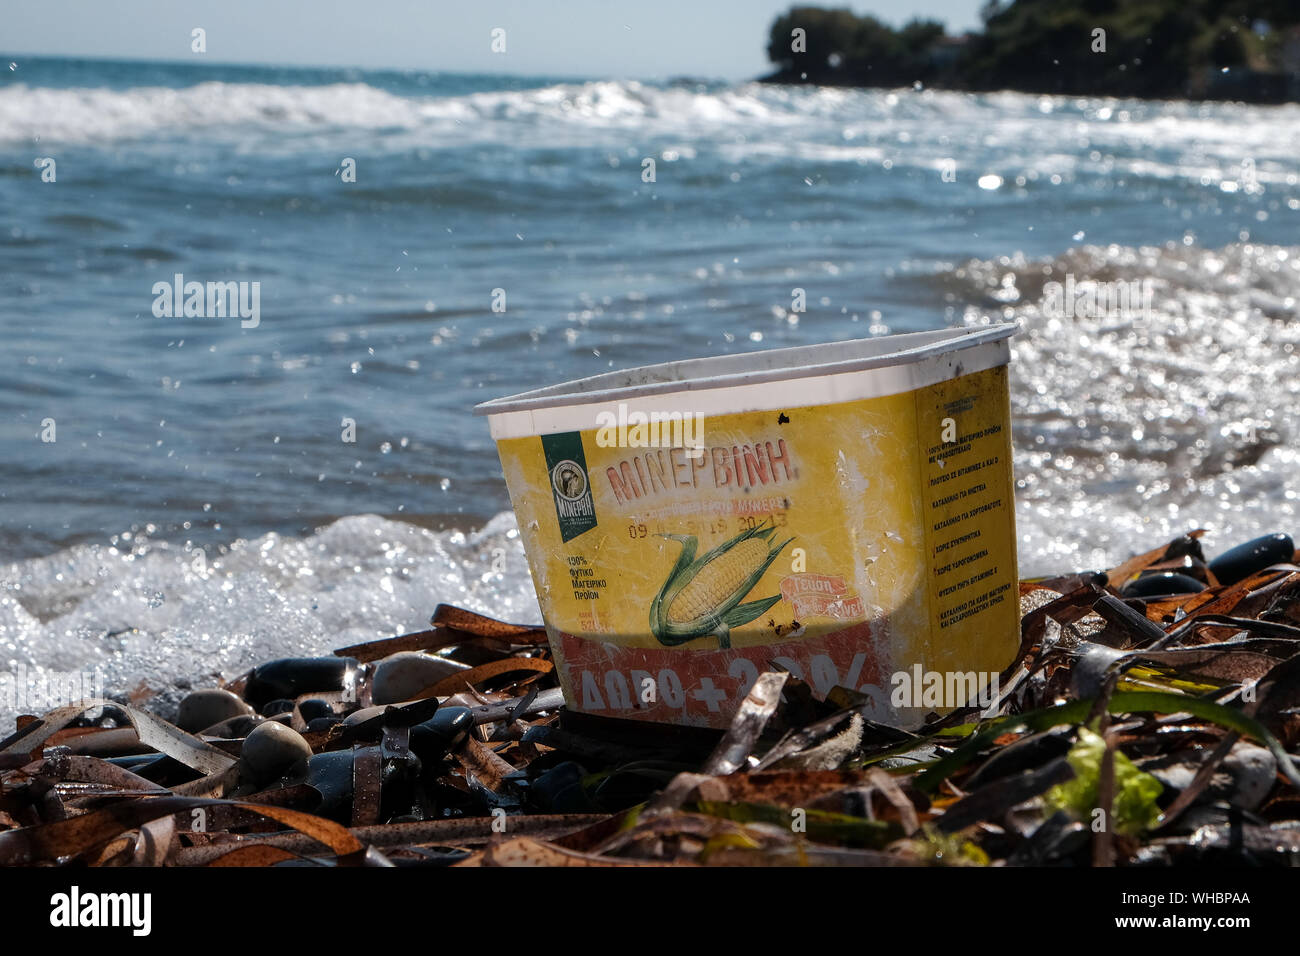 Un contenedor de dulce de plástico desechados en la playa con agua la decoloración y daño ahora añadiendo a la contaminación del océano y daños ambientales. Foto de stock